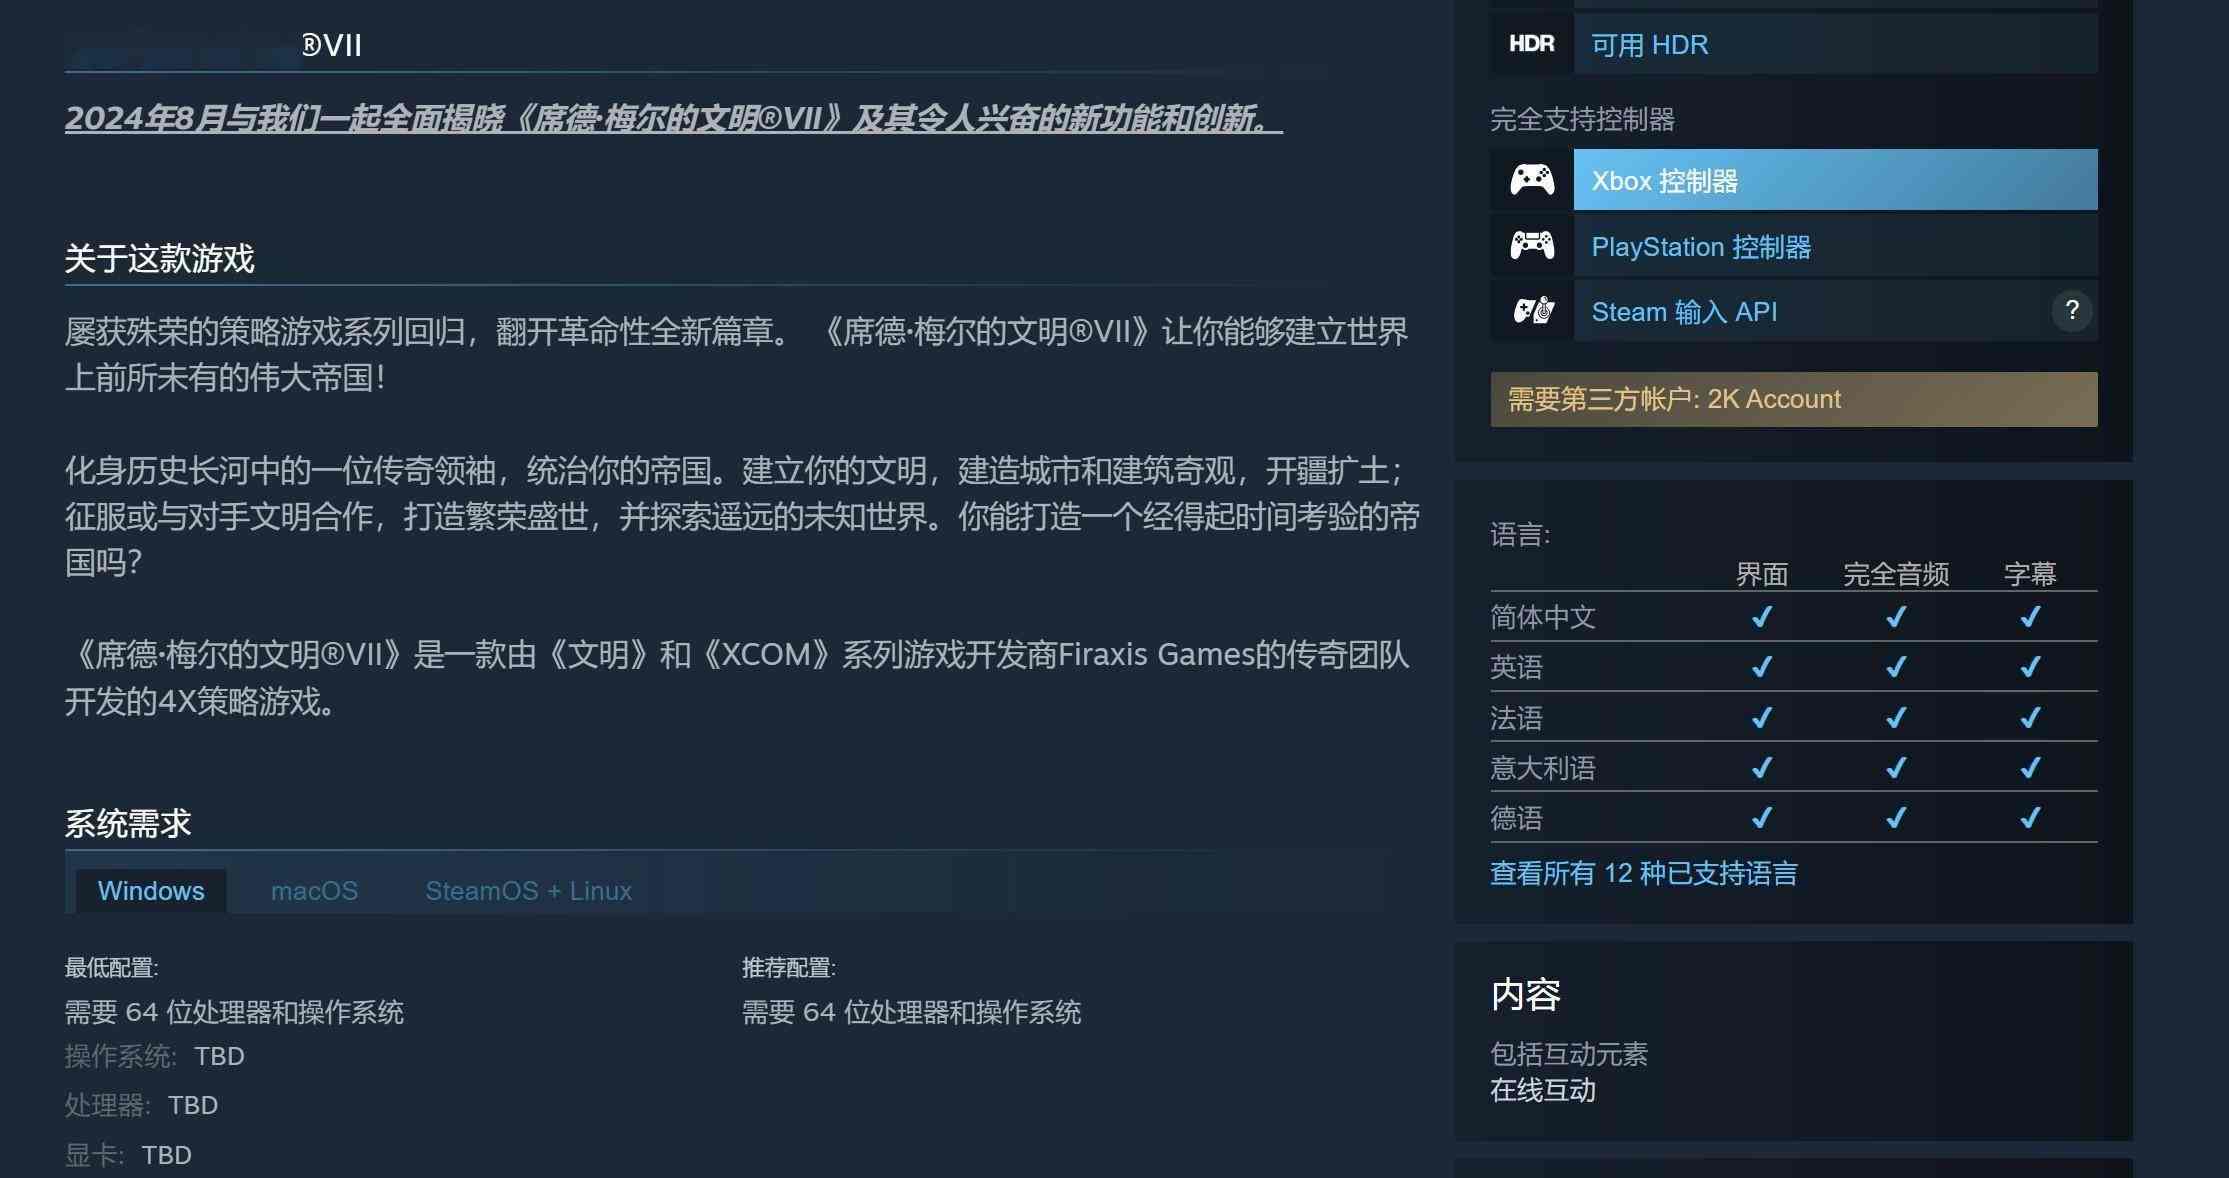 《文明7》Steam商店页上线 全新功能8月揭晓